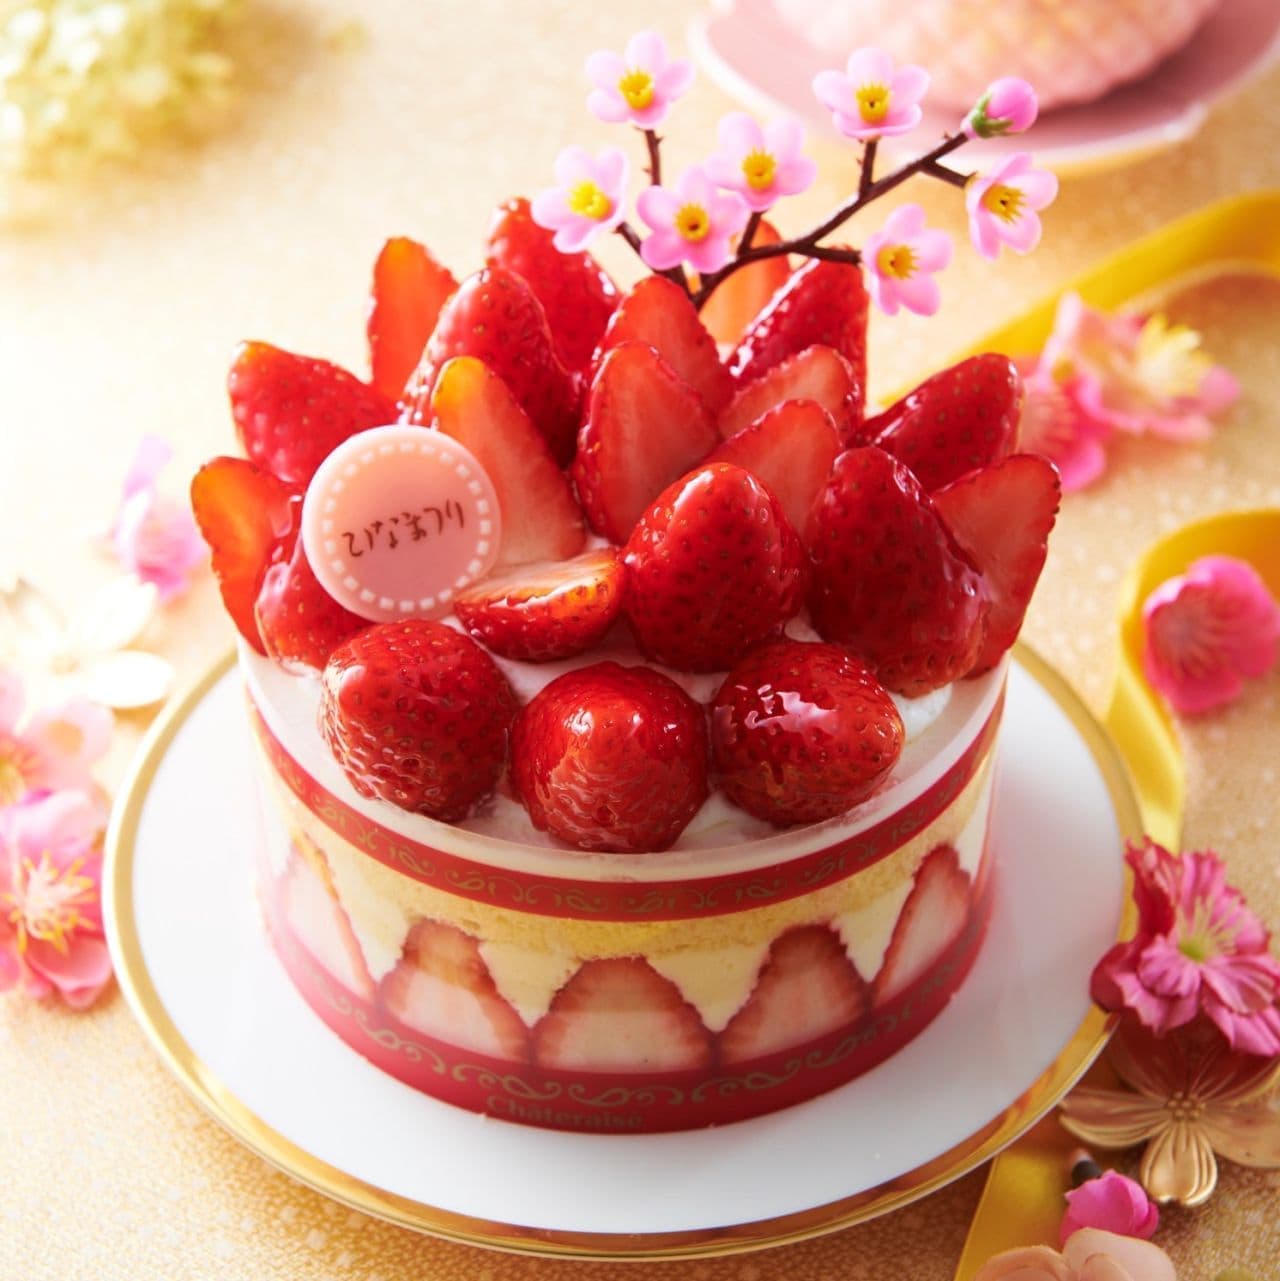 Chateraise "Hinakazari Premium Strawberry Frasier